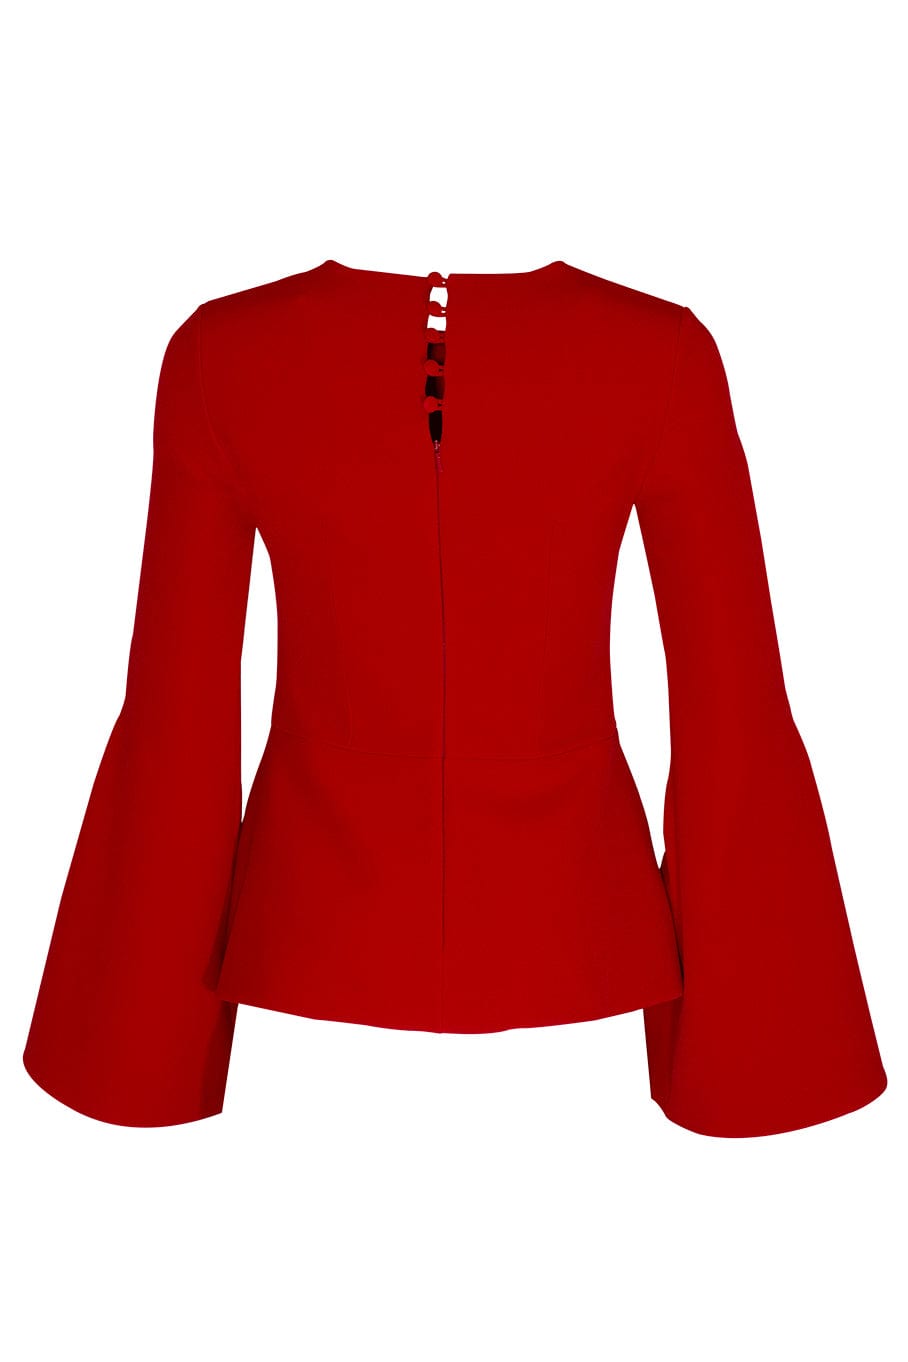 SAFIYAA-Wide Sleeve Top-DAZZLING RED